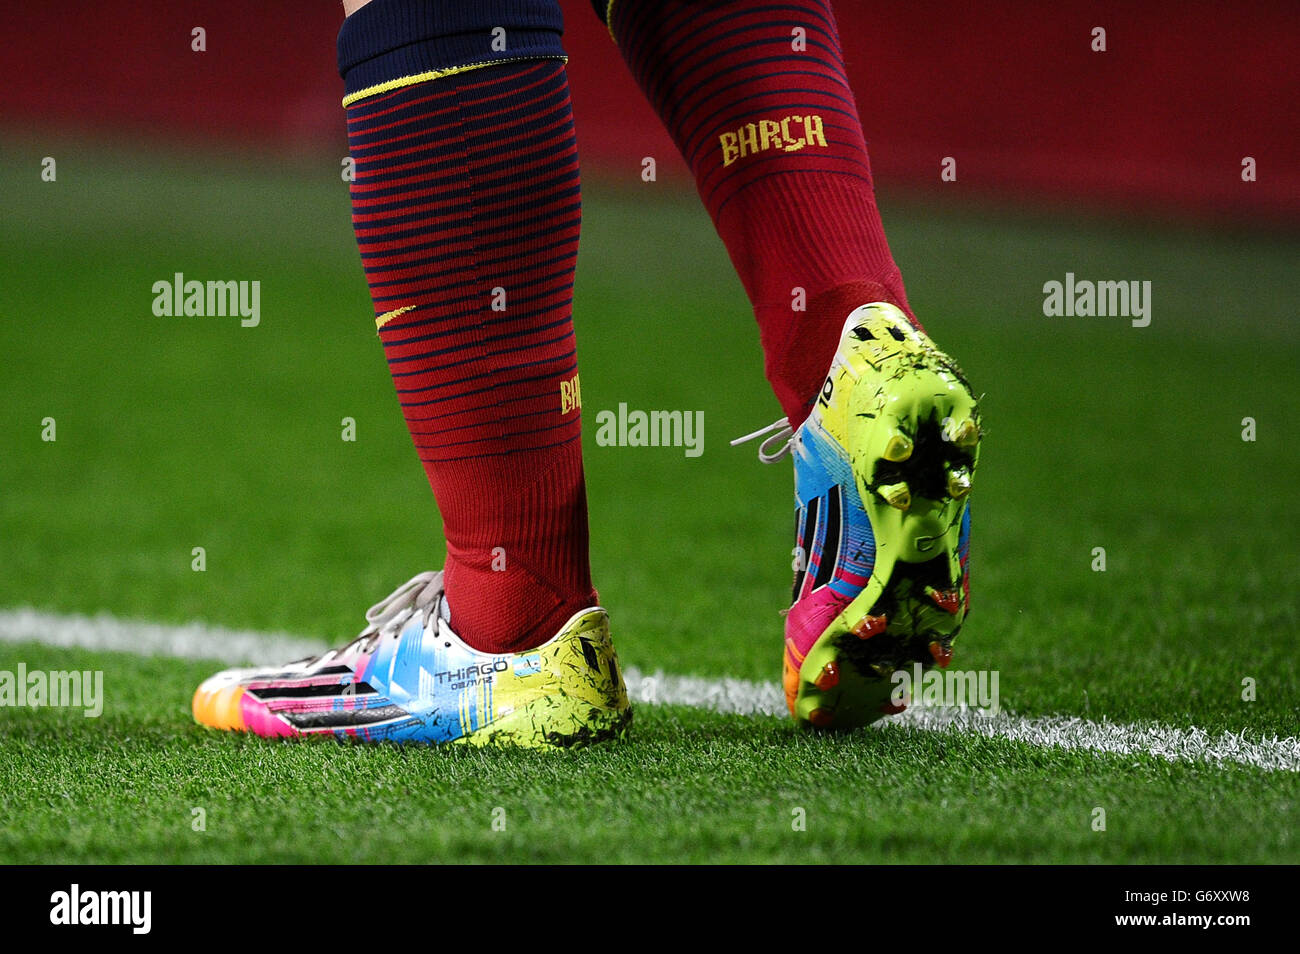 Messi boots immagini e fotografie stock ad alta risoluzione - Alamy